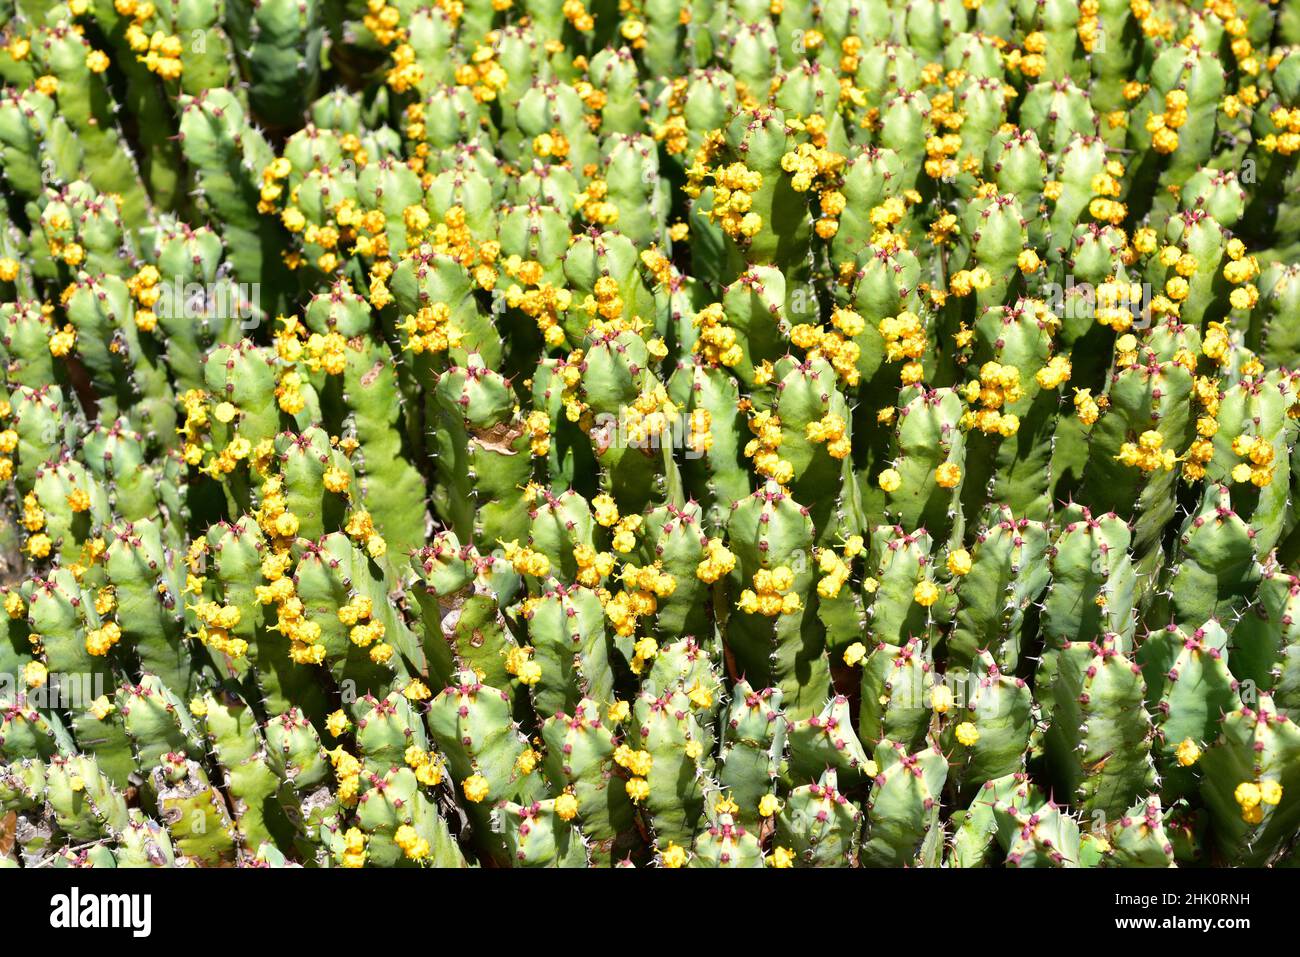 Lo sprurge di resina (Euphorbia resinifera) è un arbusto cactiforme endemico del Marocco. Il lattice è tossico. Foto Stock